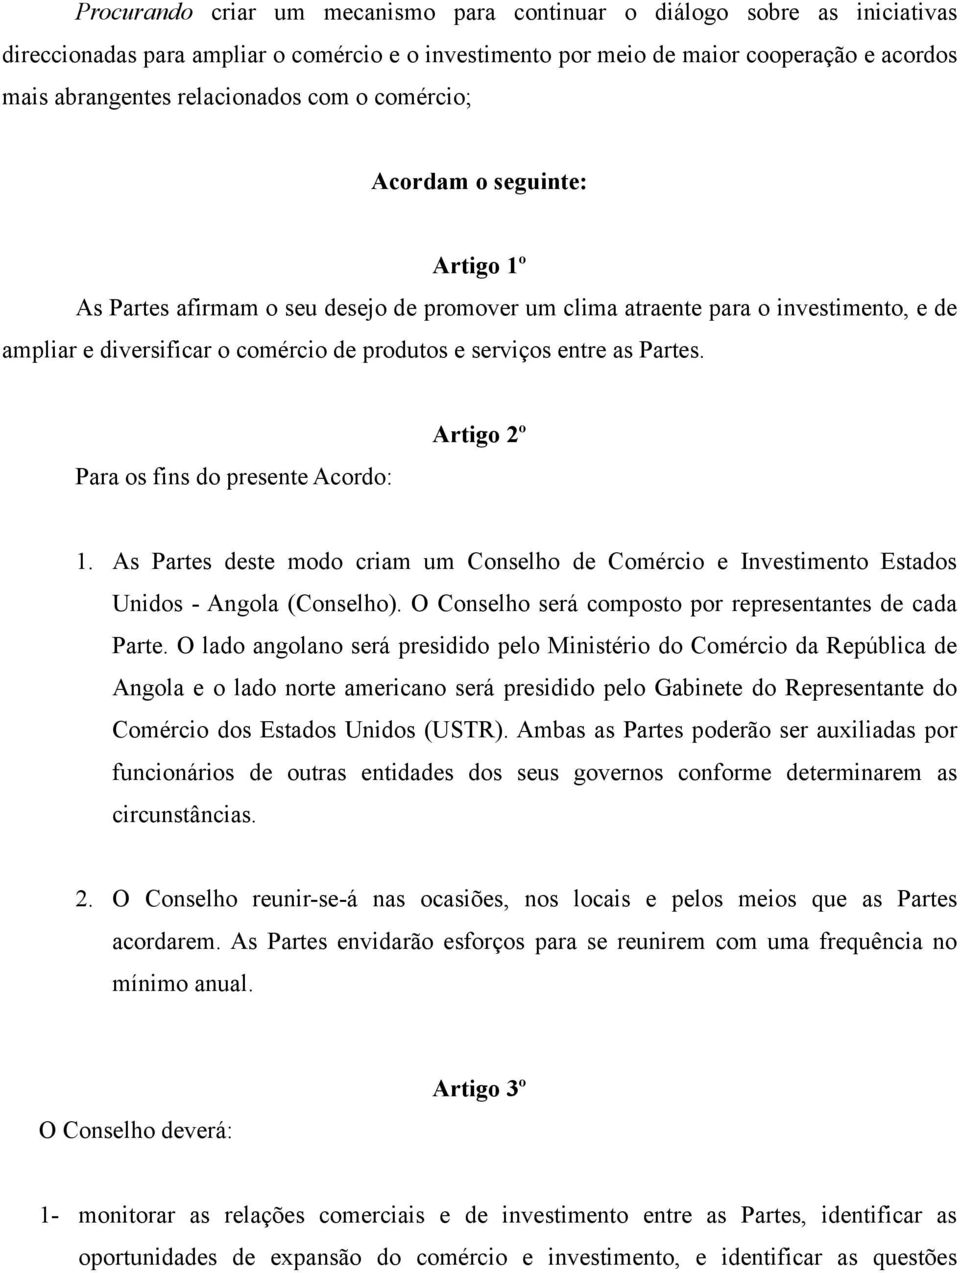 Partes. Para os fins do presente Acordo: Artigo 2º 1. As Partes deste modo criam um Conselho de Comércio e Investimento Estados Unidos - Angola (Conselho).